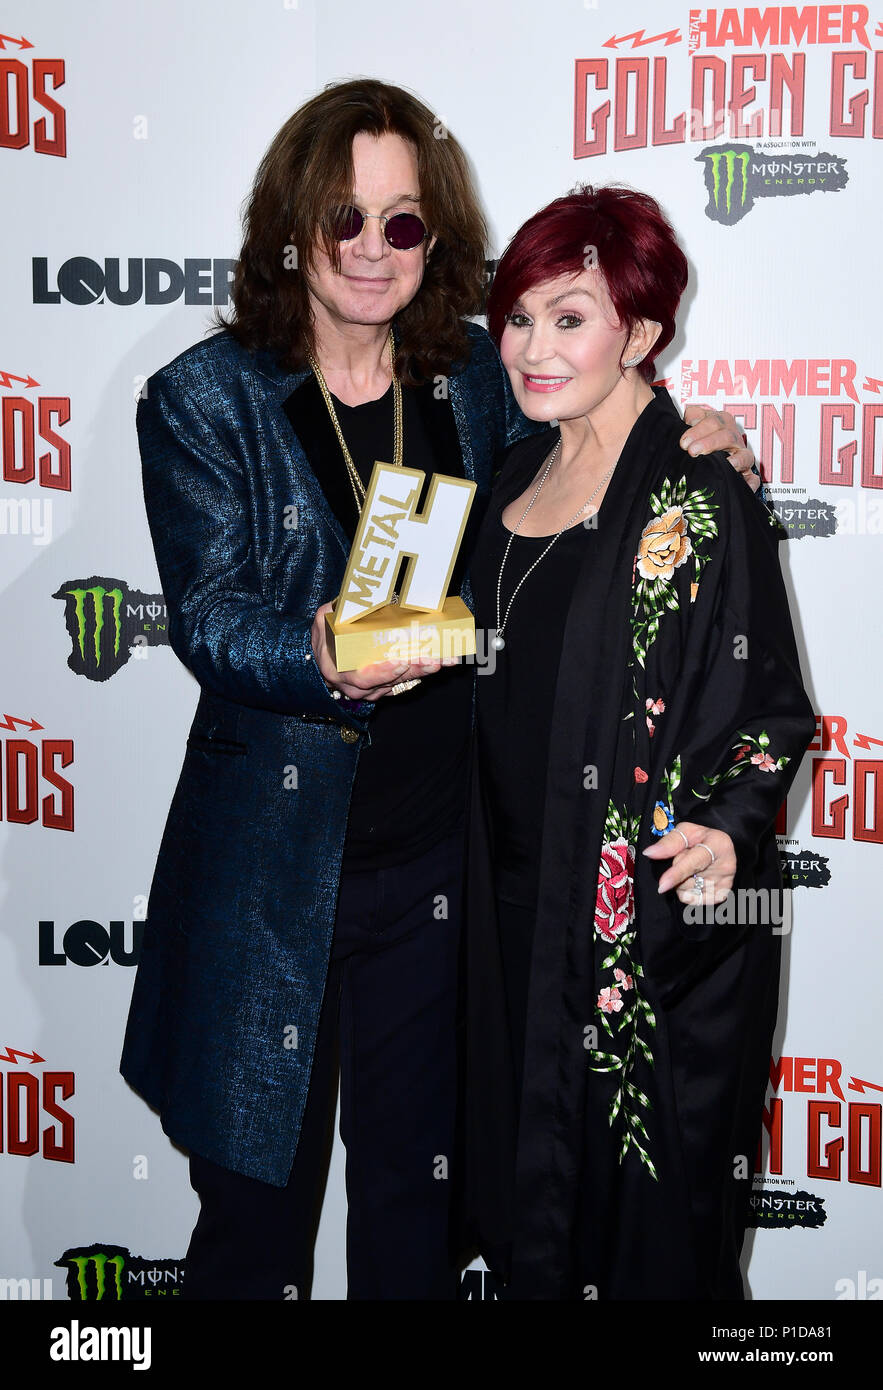 Ozzy Osbourne avec son Dieu d'or award et épouse Sharon Osbourne dans la salle de presse au Metal Hammer Golden Gods Awards 2018 tenue à l'indigo à l'O2 à Londres. Banque D'Images